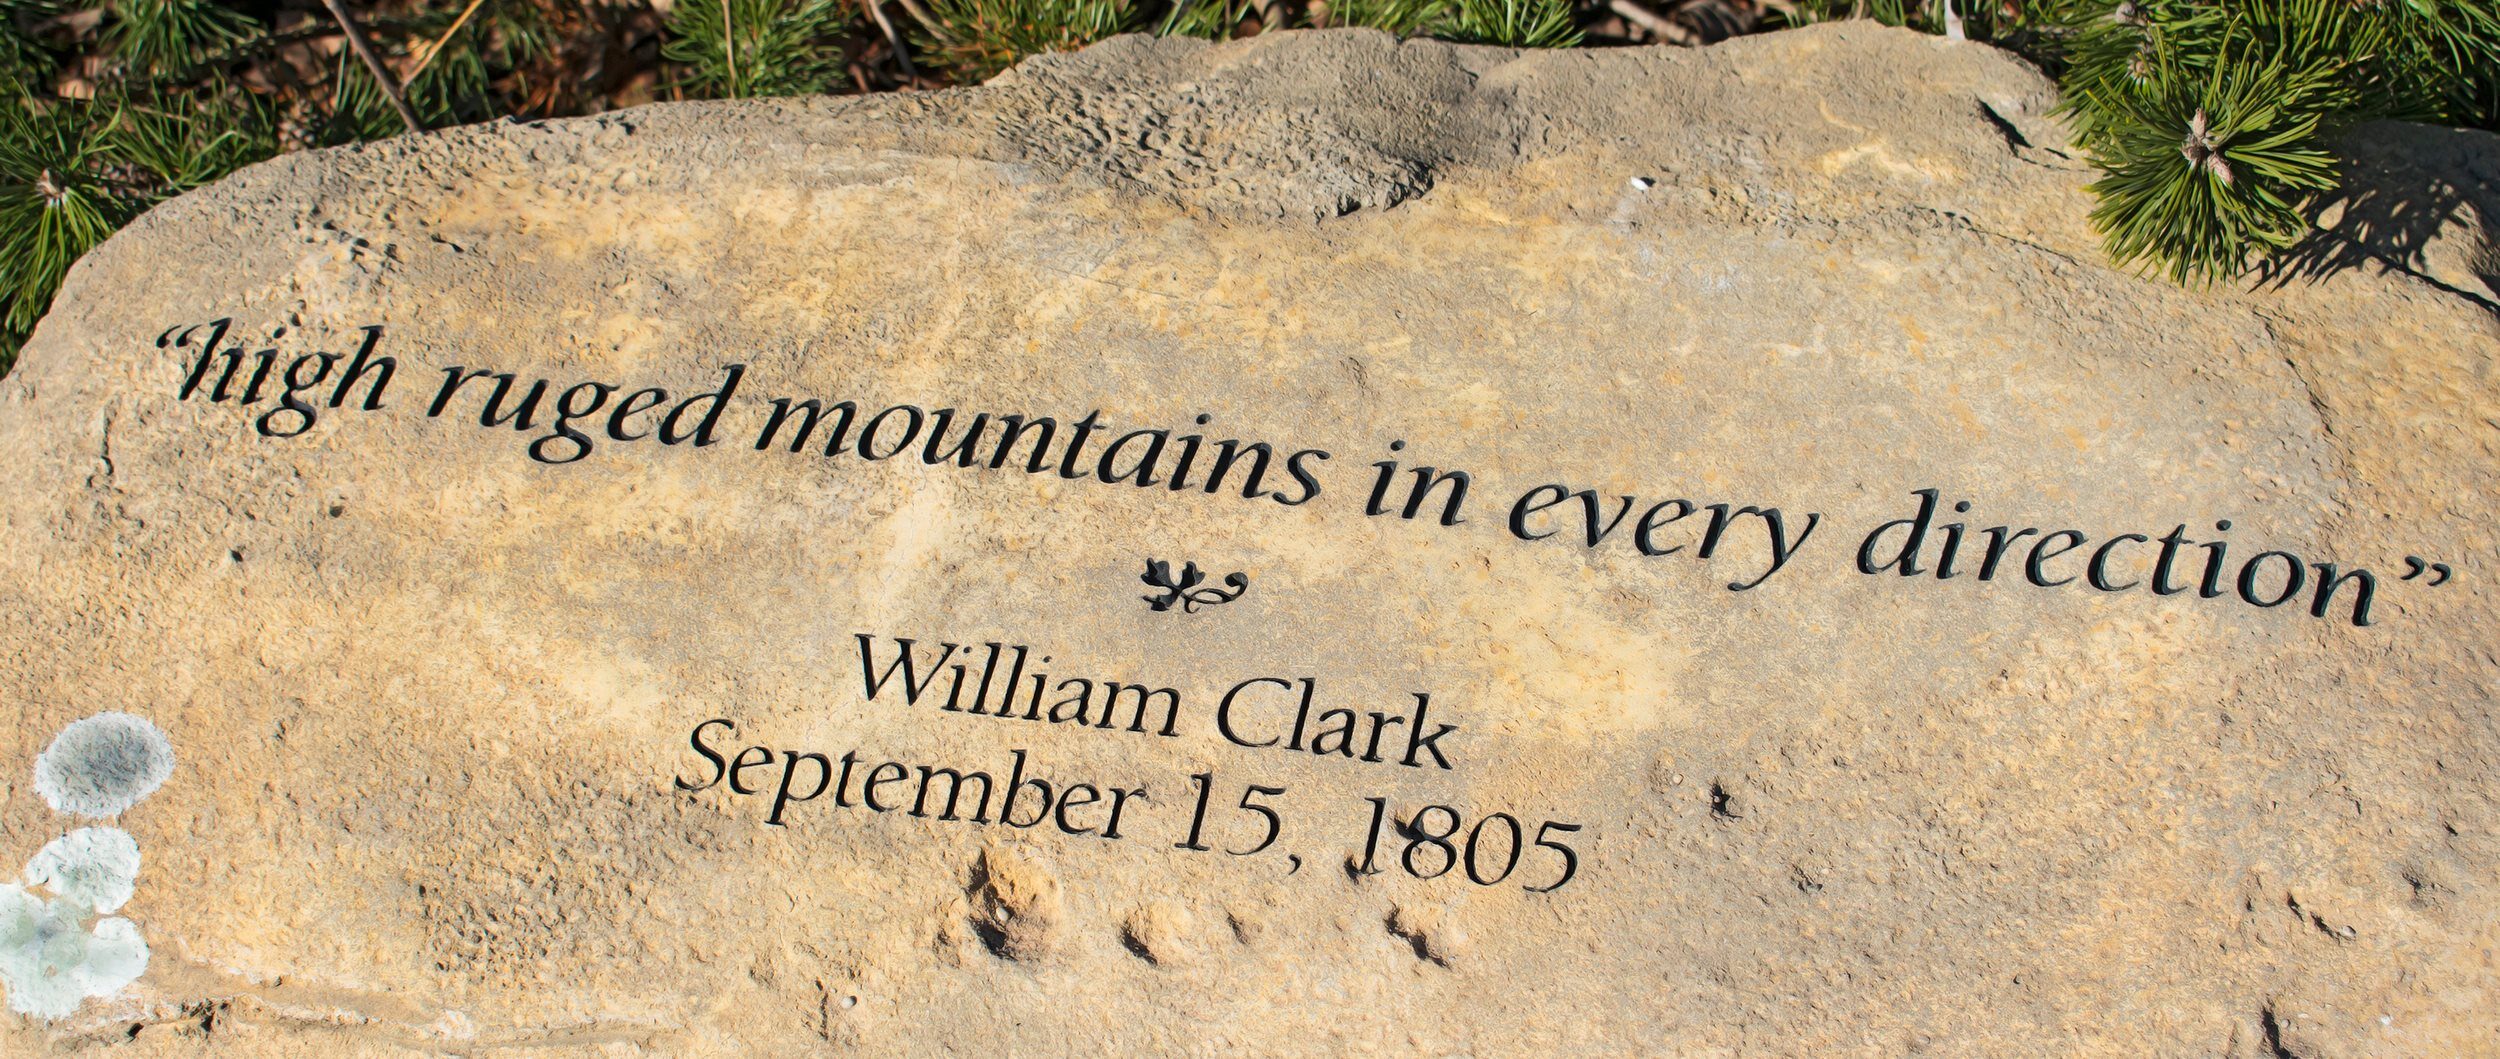 Lewis & Clark quote